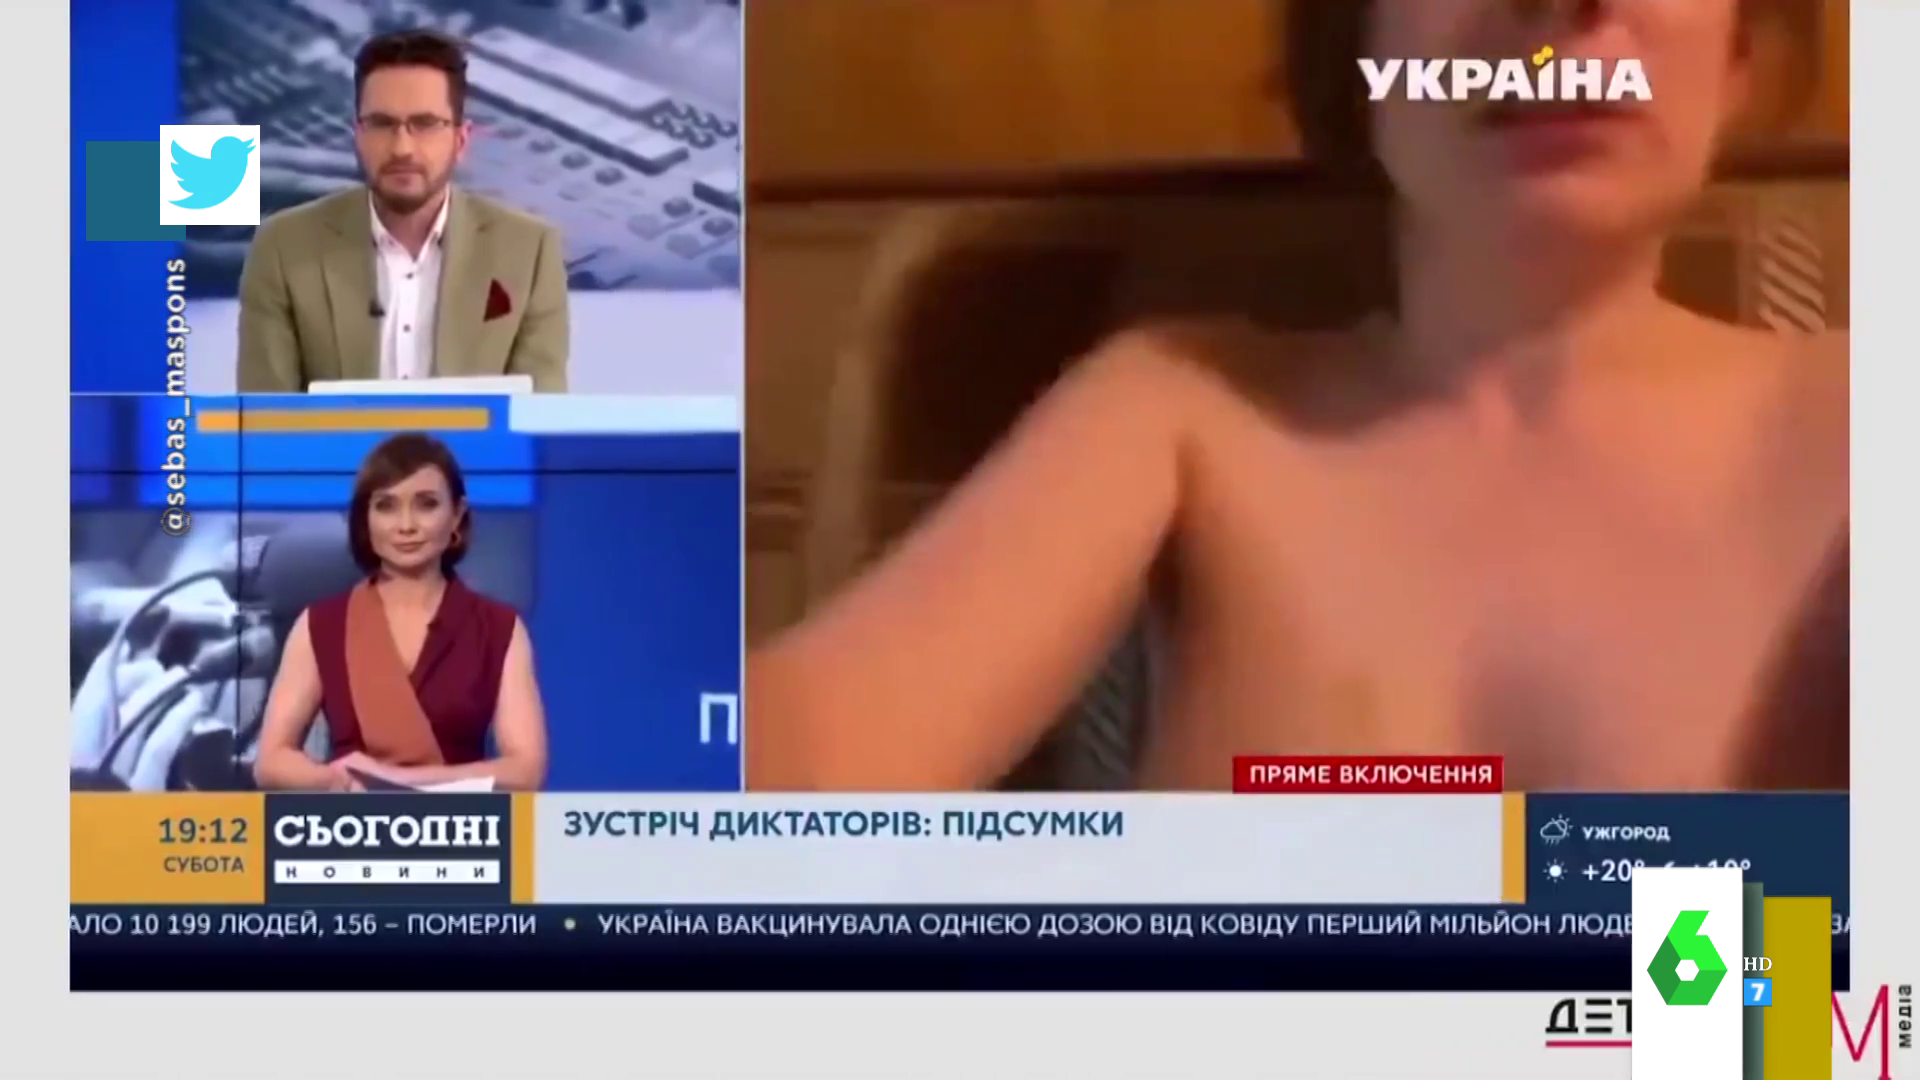 El inesperado momento en el que sale una mujer desnuda en una videollamada de televisión así son las reacciones en directo imagen